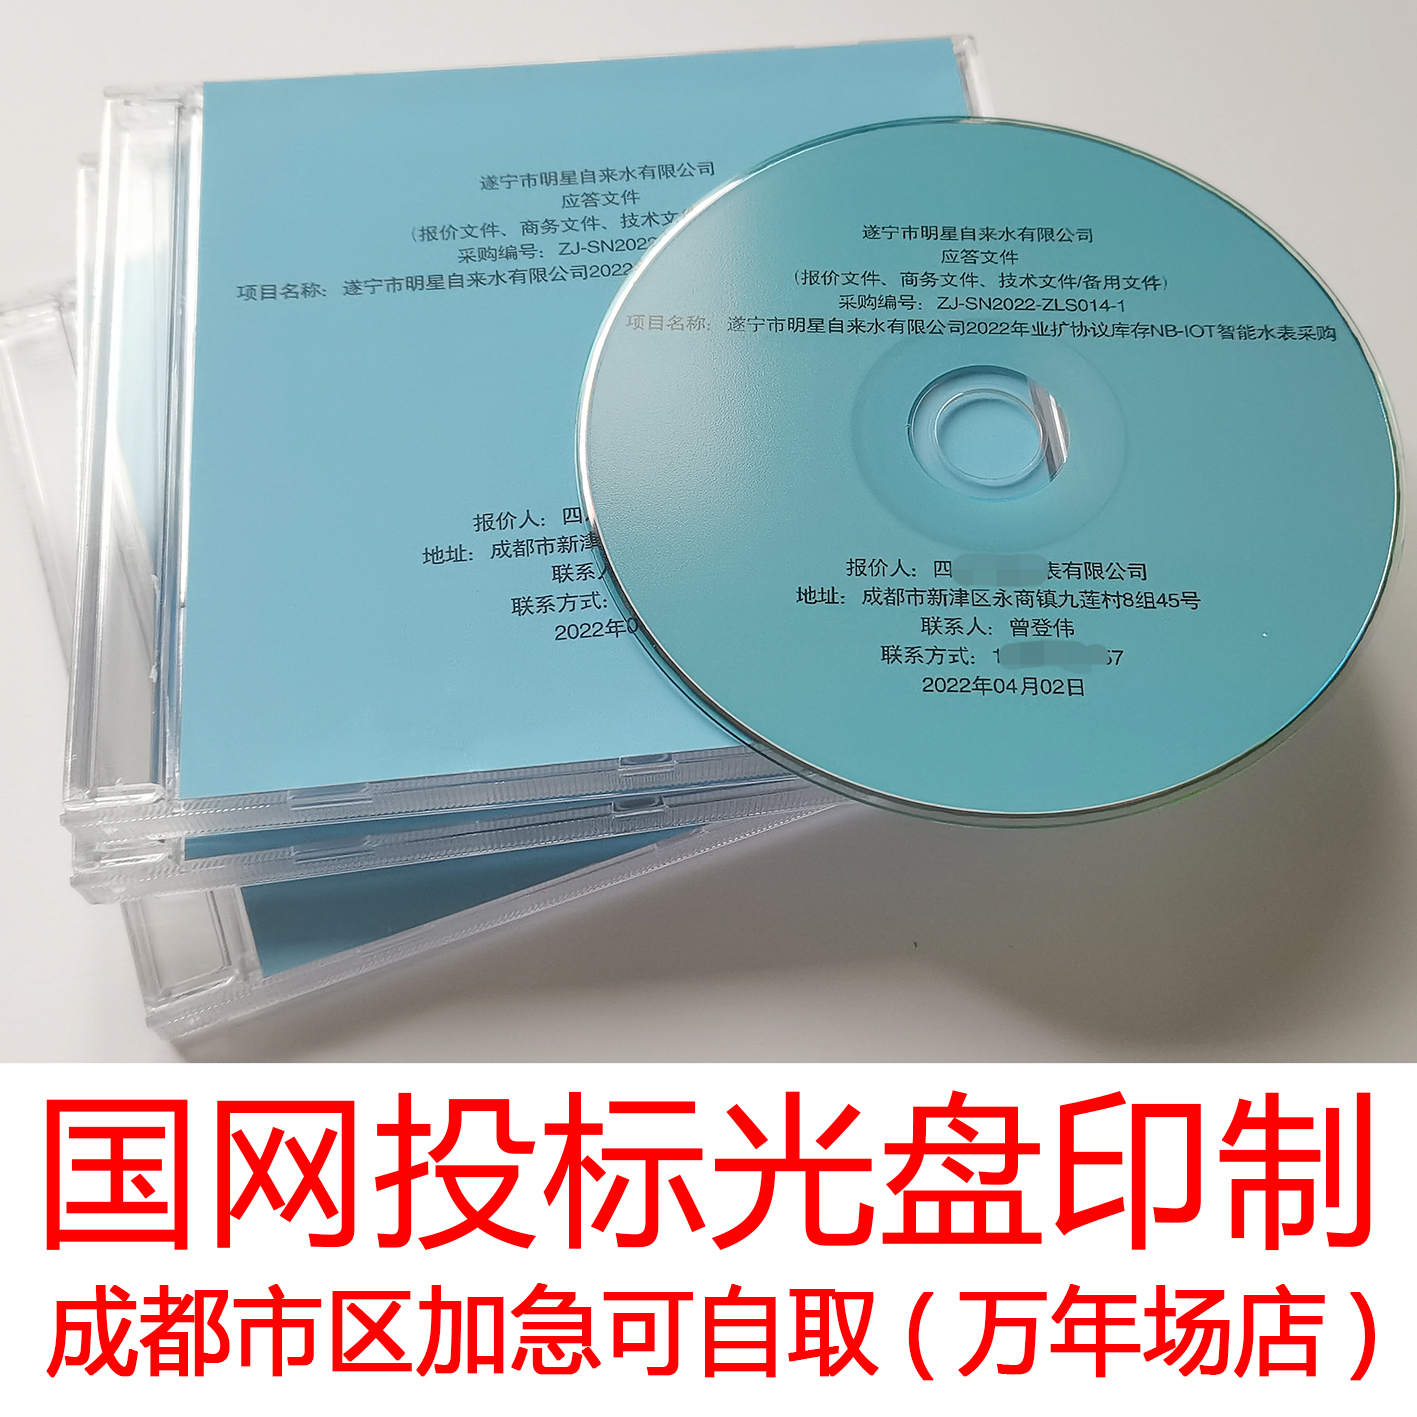 投标打印光盘代刻录法院证据录音视频课件作业碟片数据文件软件-图2